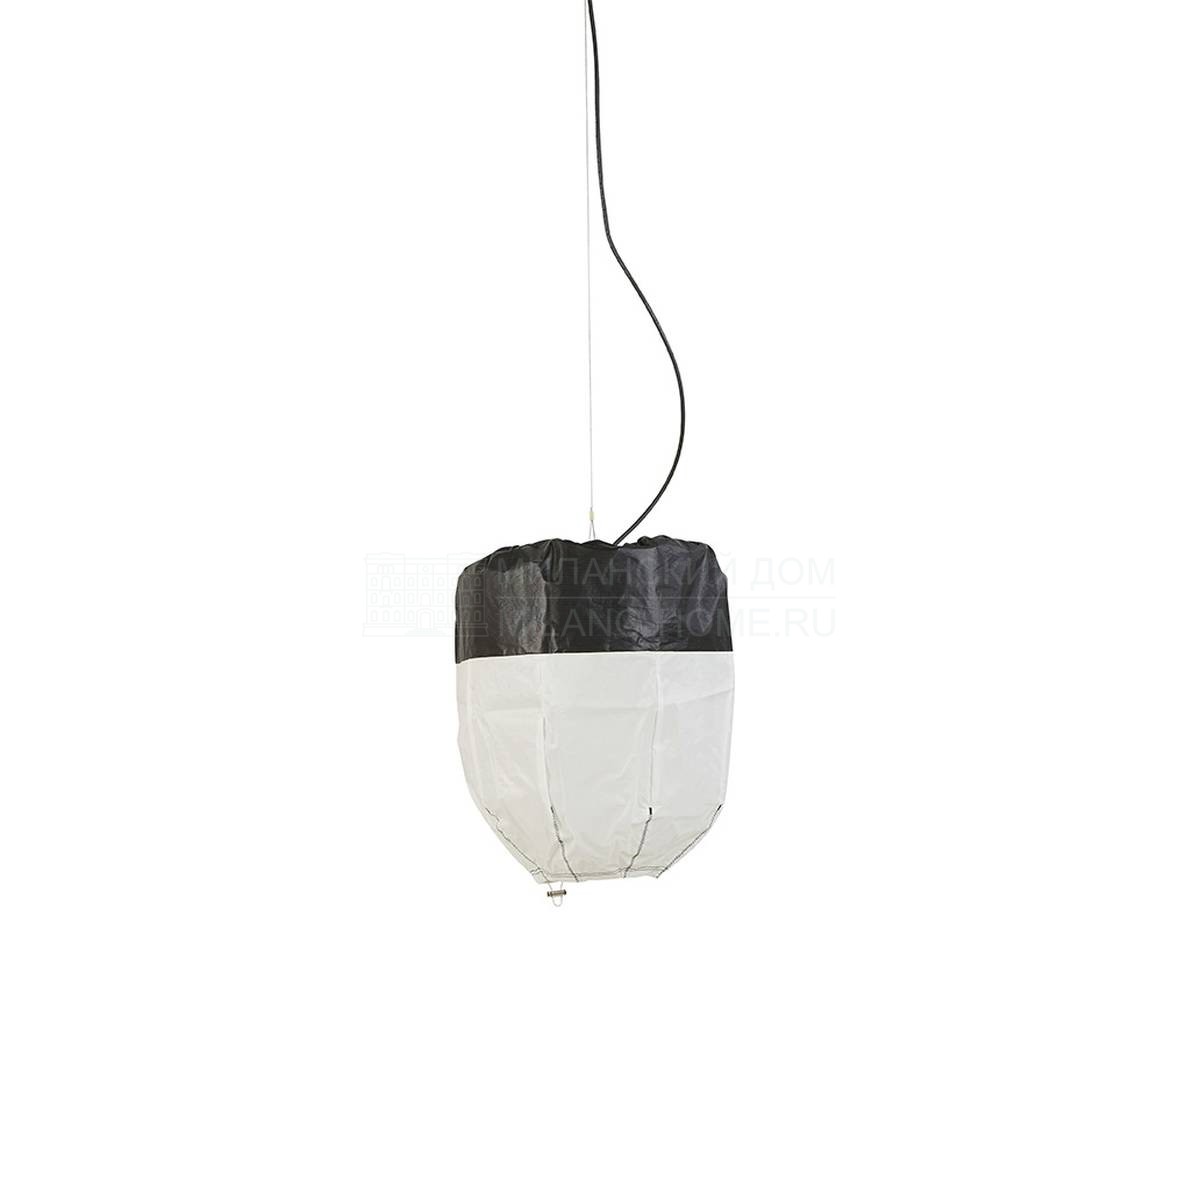 Подвесной светильник Spi black lamp из Франции фабрики FORESTIER